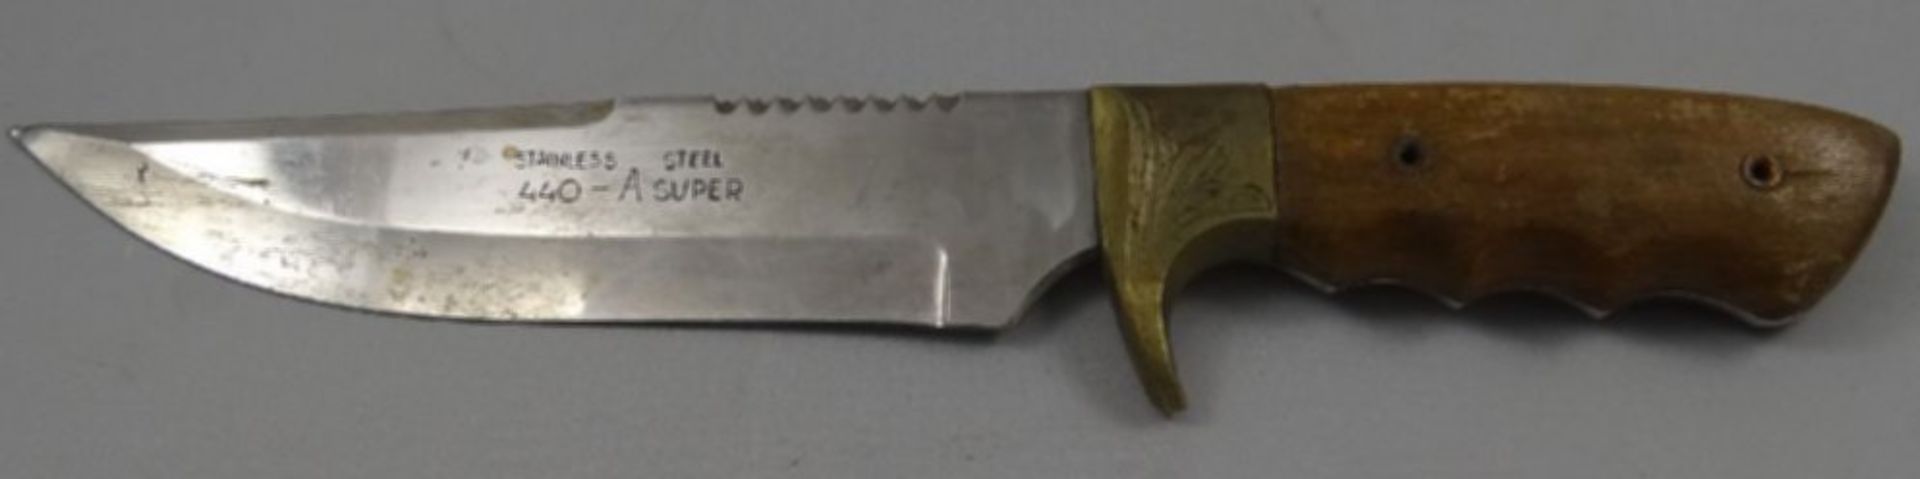 altes Jagdmesser "Aitor" Spain, Lederscheide, Holzgriff, Gebrauchsspuren, L-31,5 cm - Bild 4 aus 6